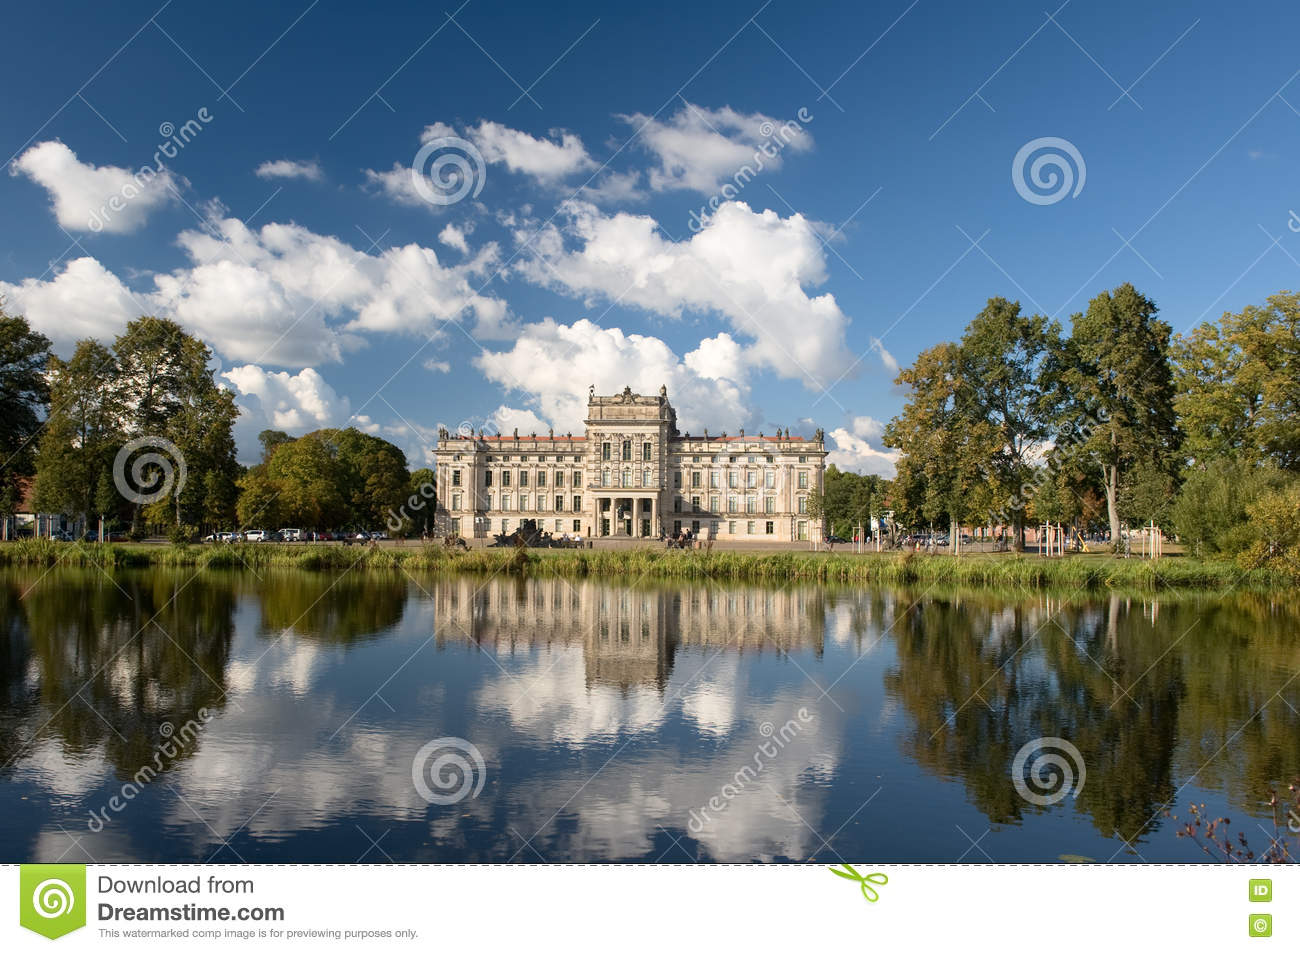 Ludwigslust Palace #1